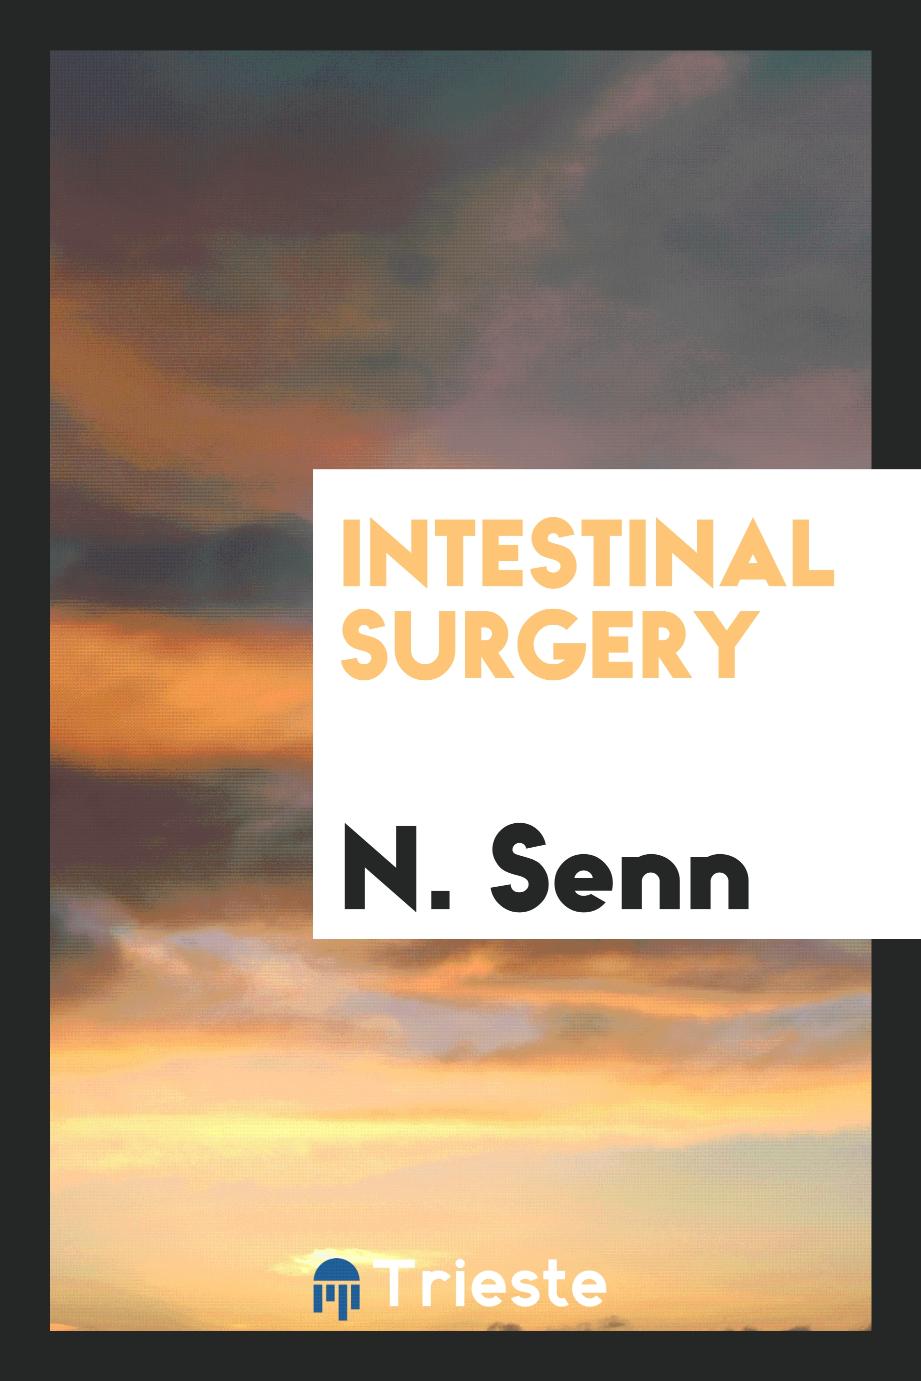 Intestinal surgery